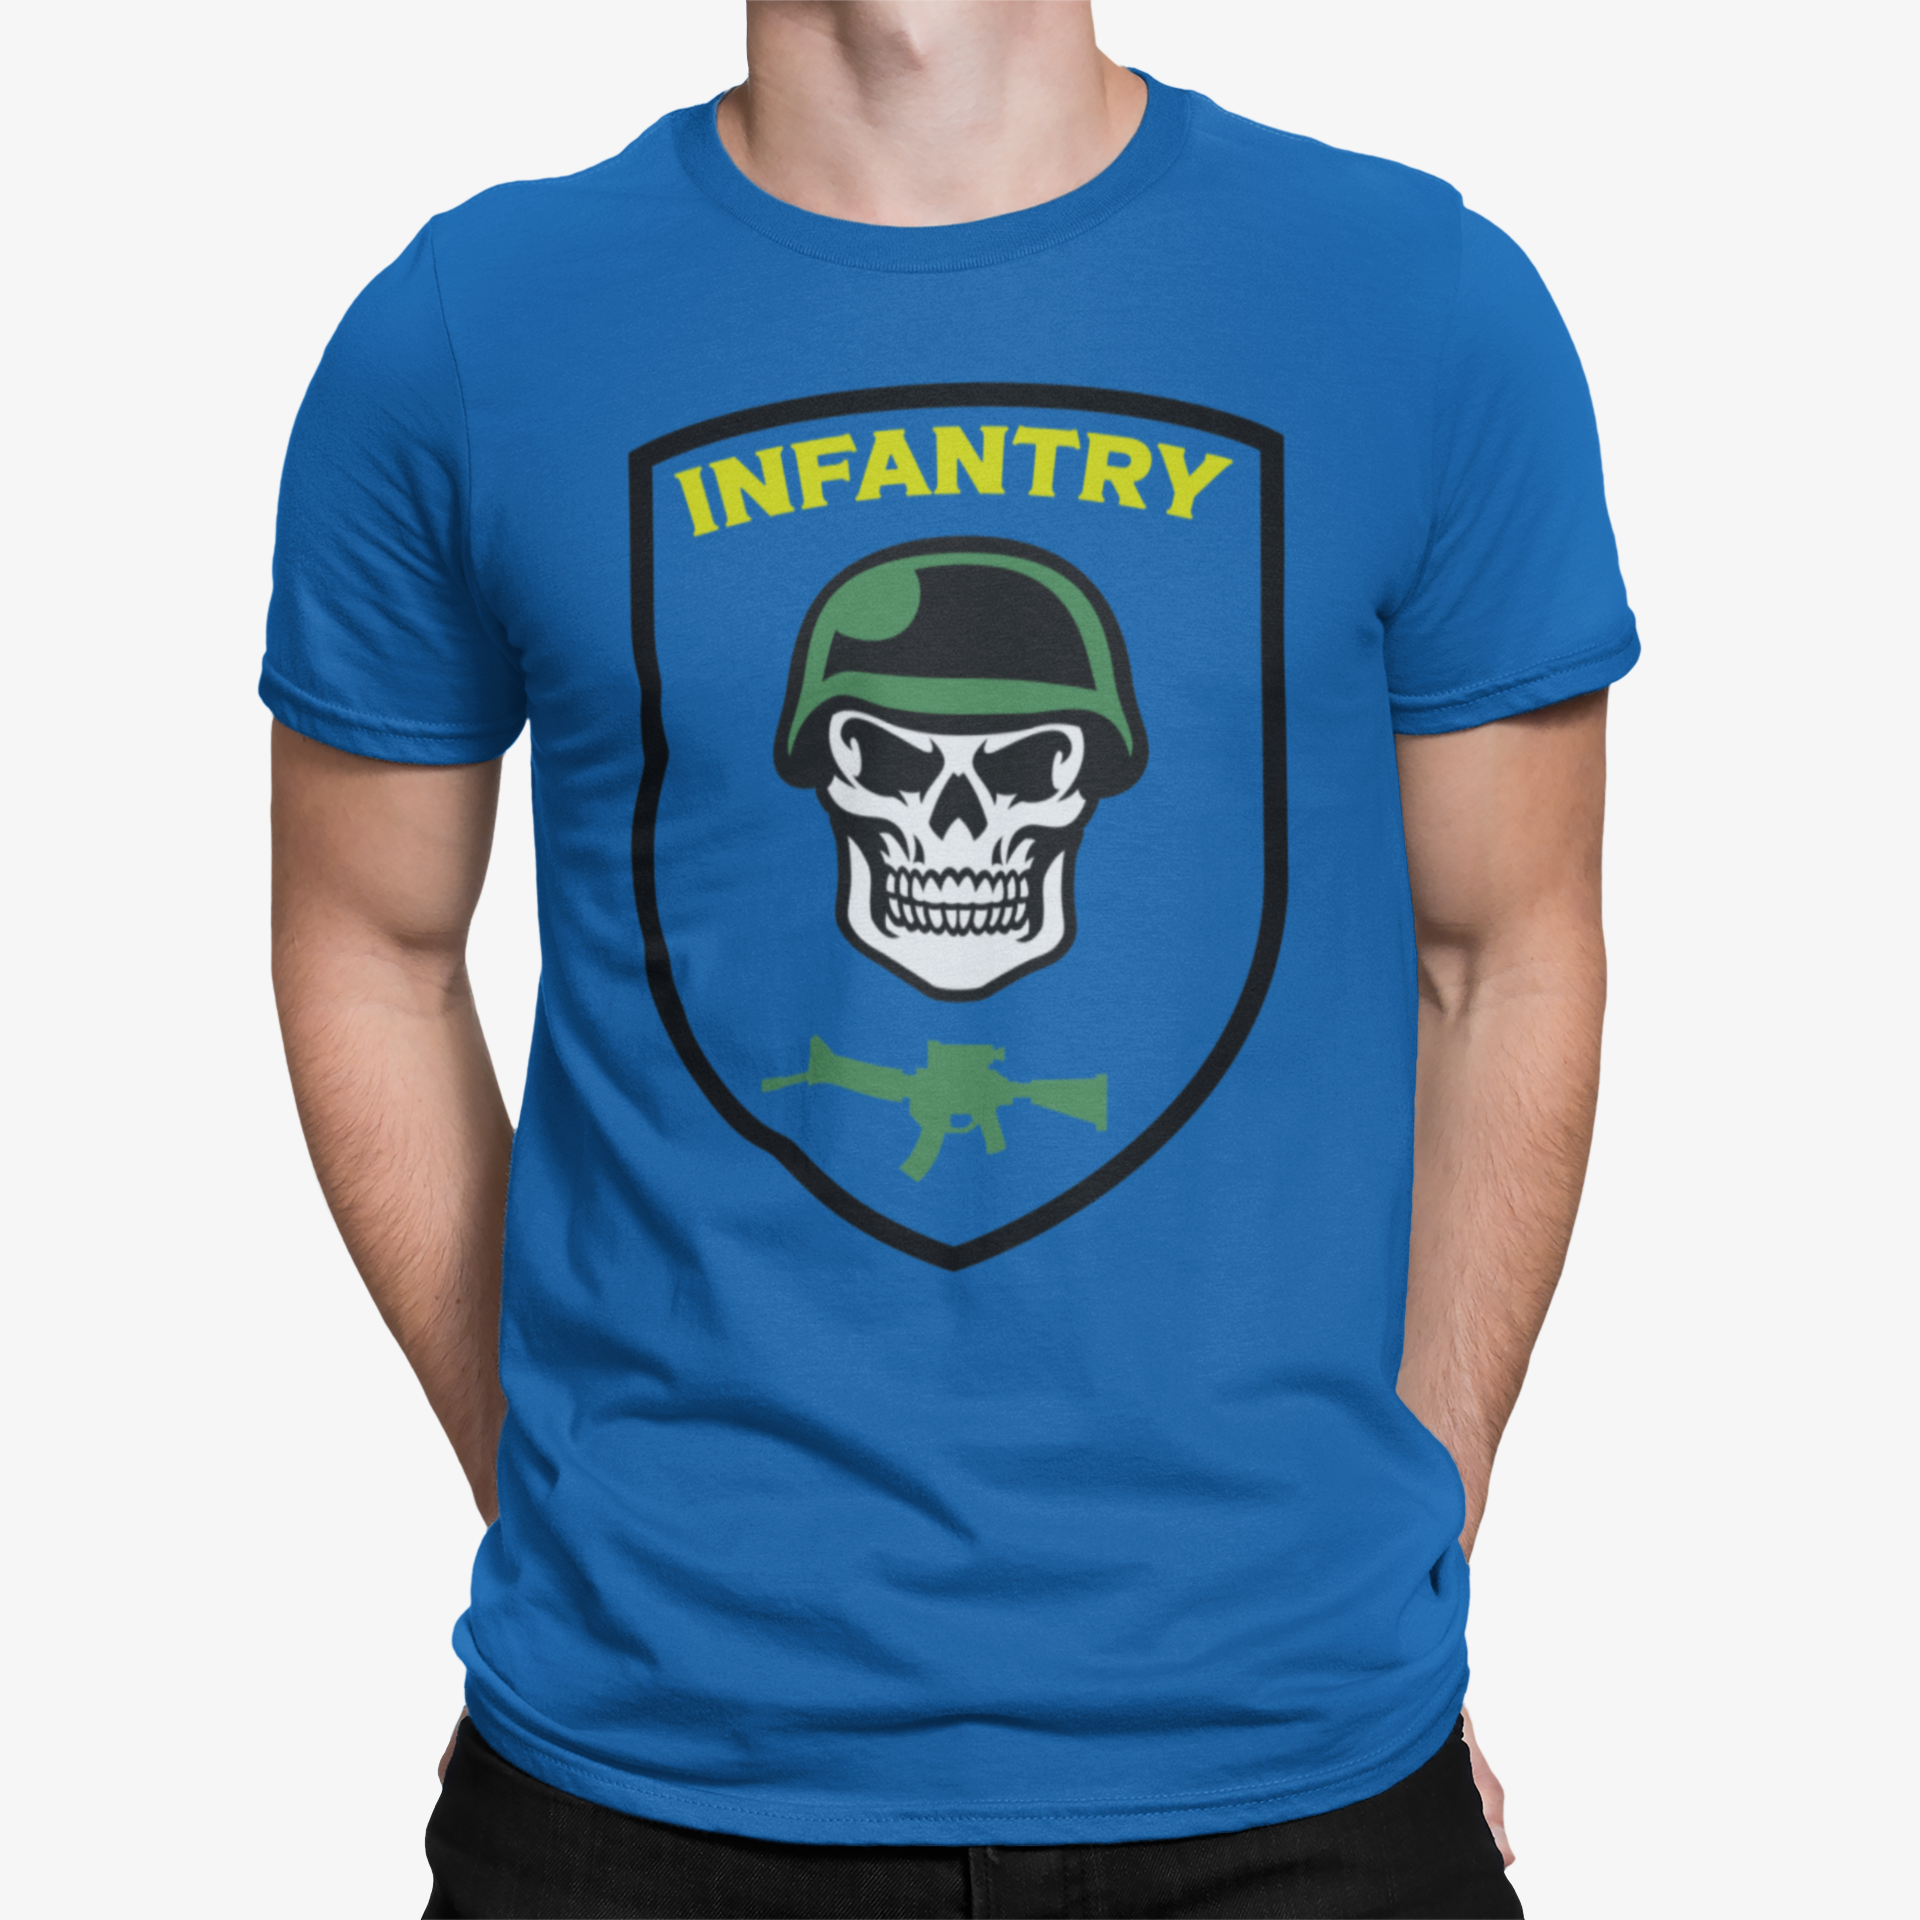 Camiseta Infanteria